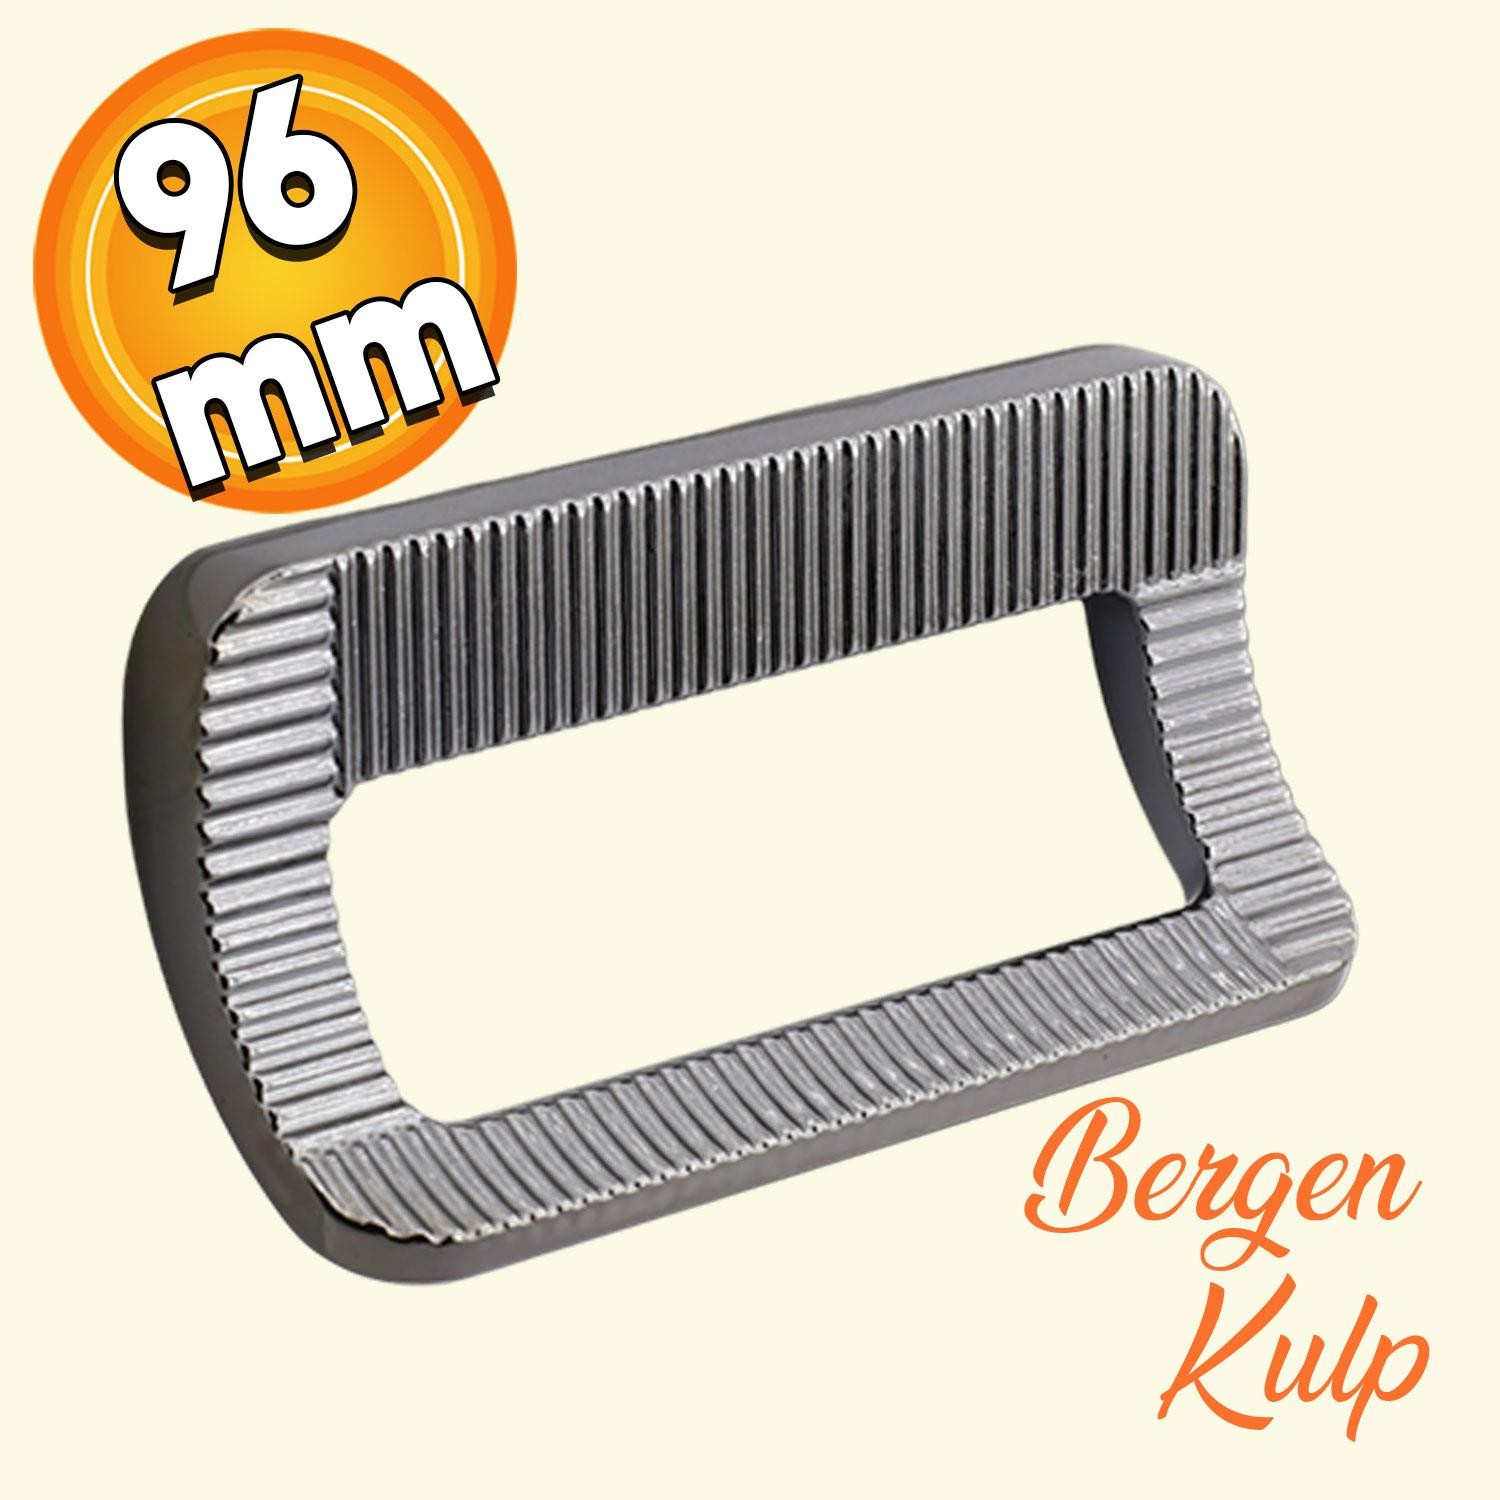 Bergen Metax Desenli Mobilya Mutfak Dolabı Çekmece Dolap Kapak Kulpu Kulbu Metal Kulp Füme 96 mm